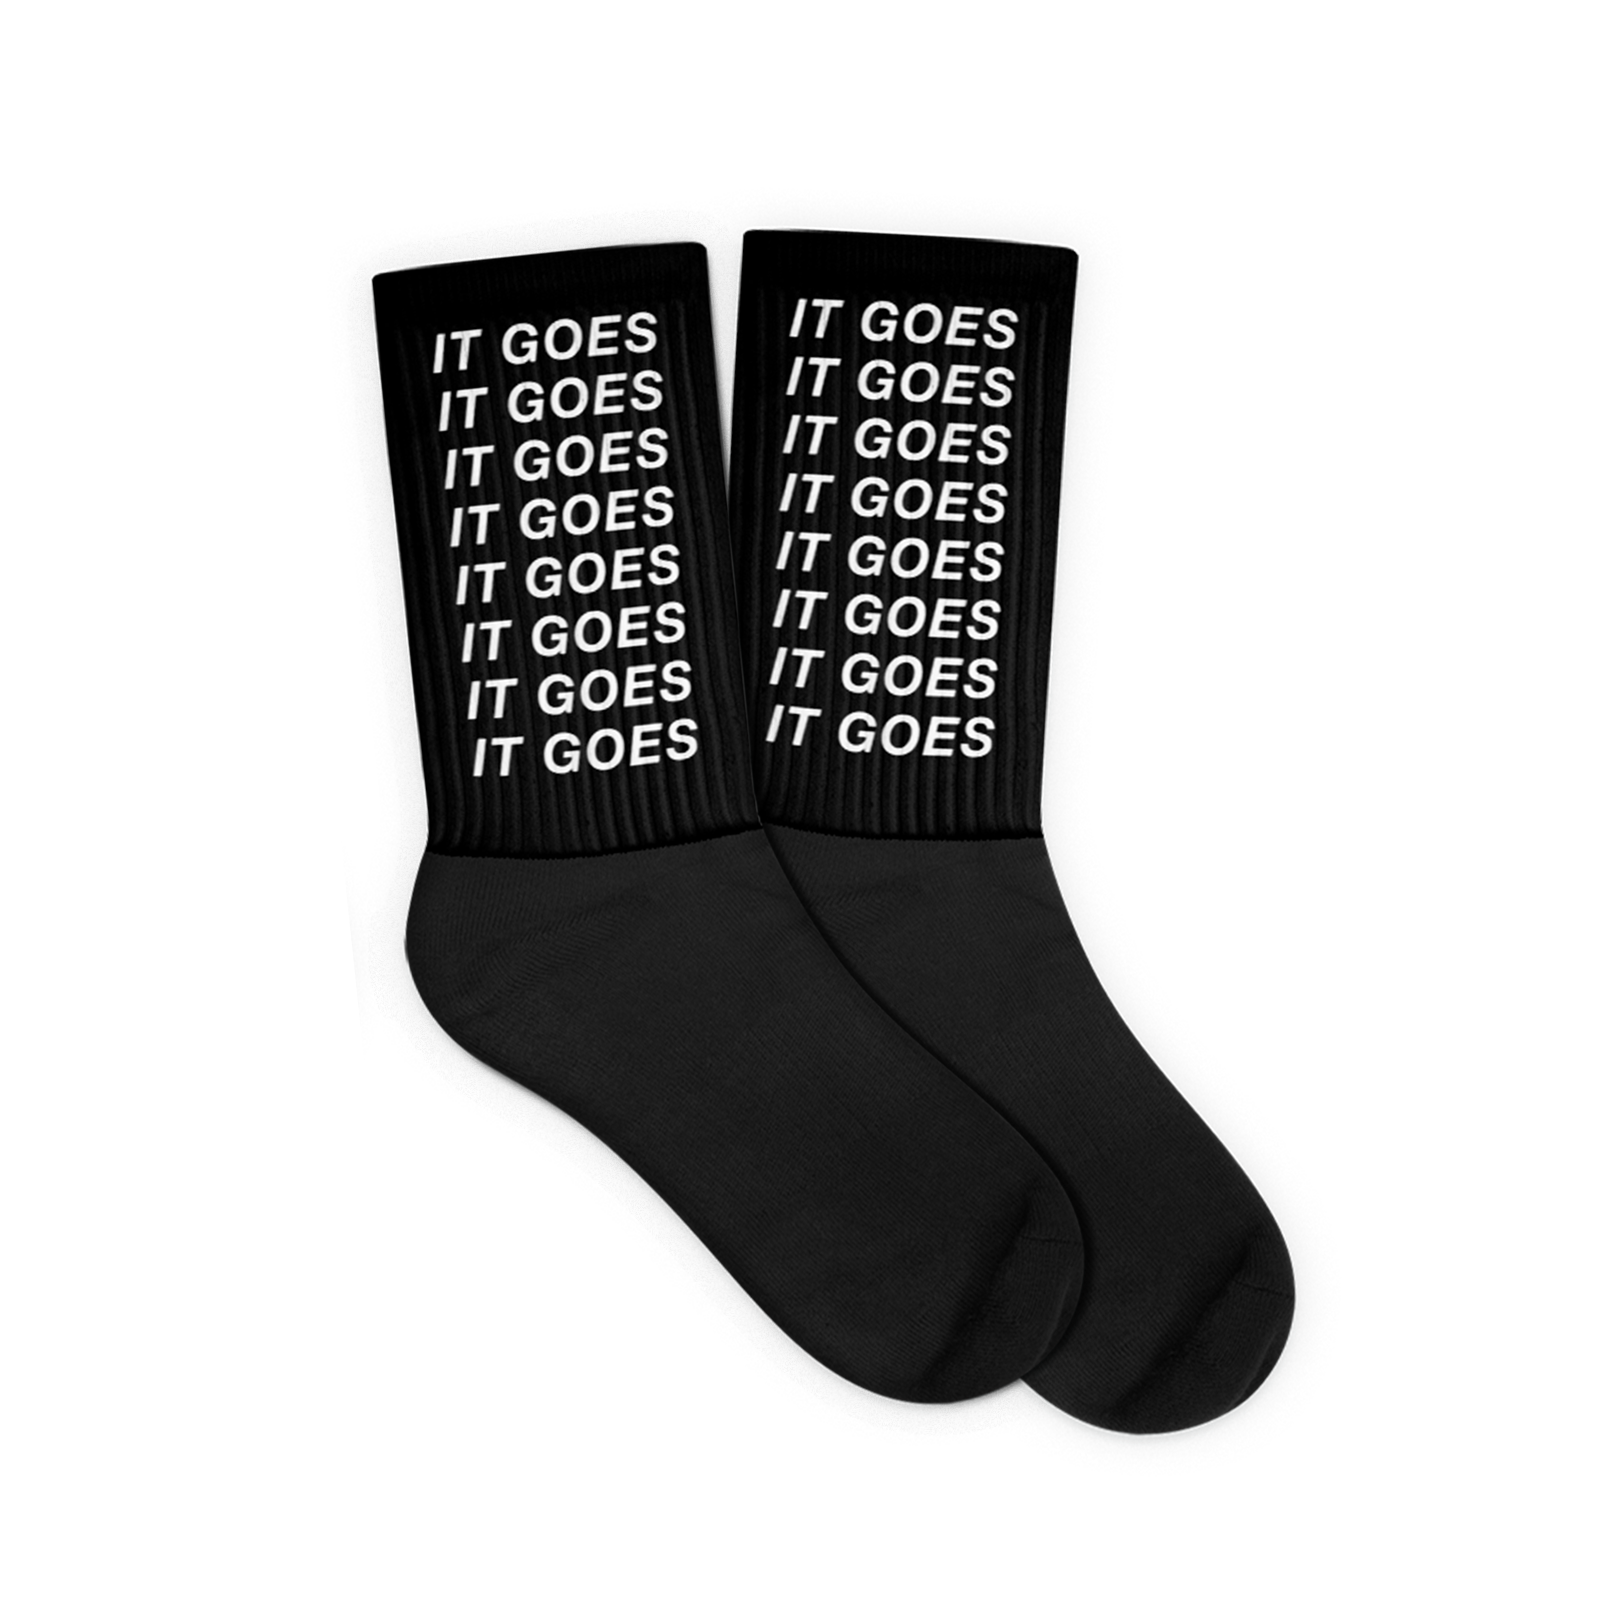 IT GOES socks